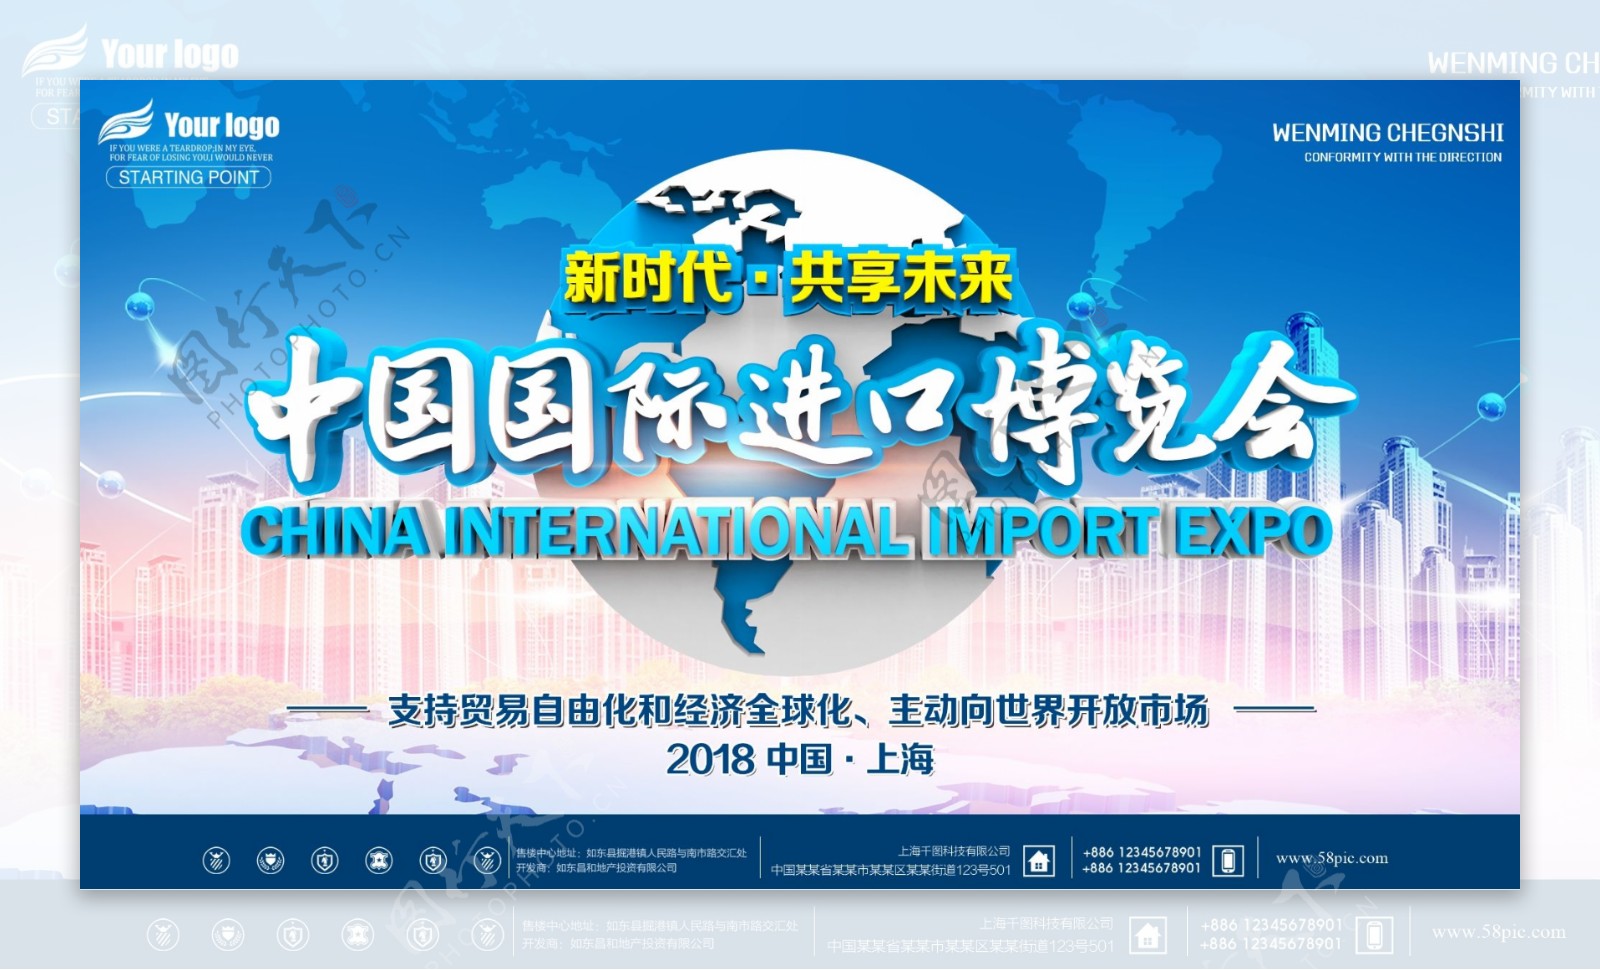 中国国际进口博览会宣传展板